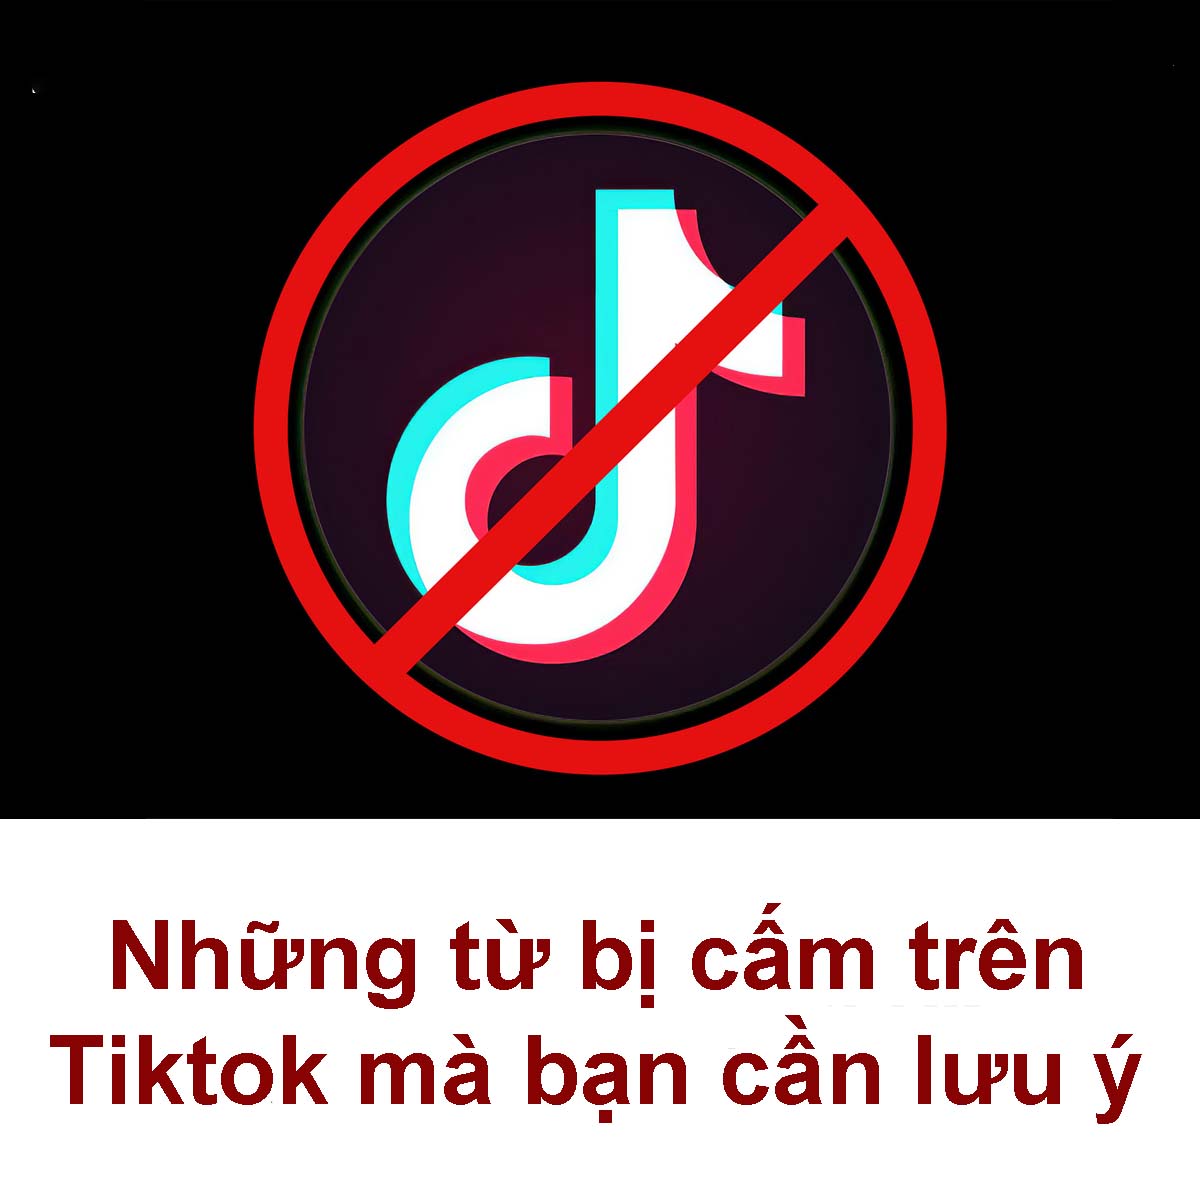 Danh sách các từ ngữ, video và sản phẩm bị cấm trên Tiktok